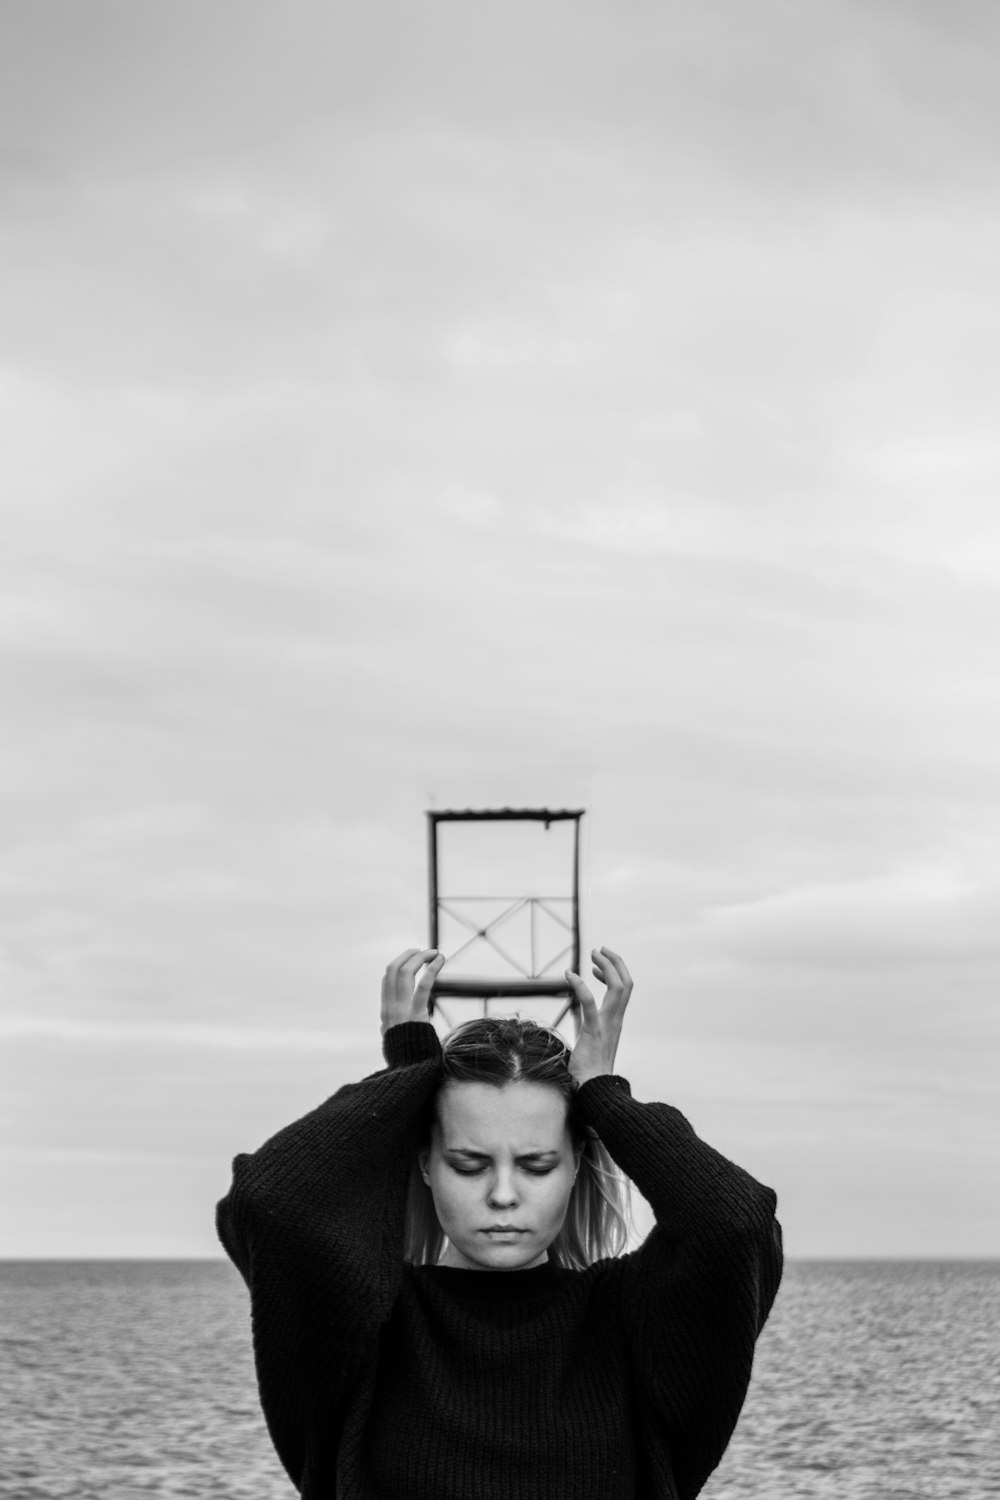 fotografia in scala di grigi di donna che tiene una cornice metallica quadrata sopra la testa